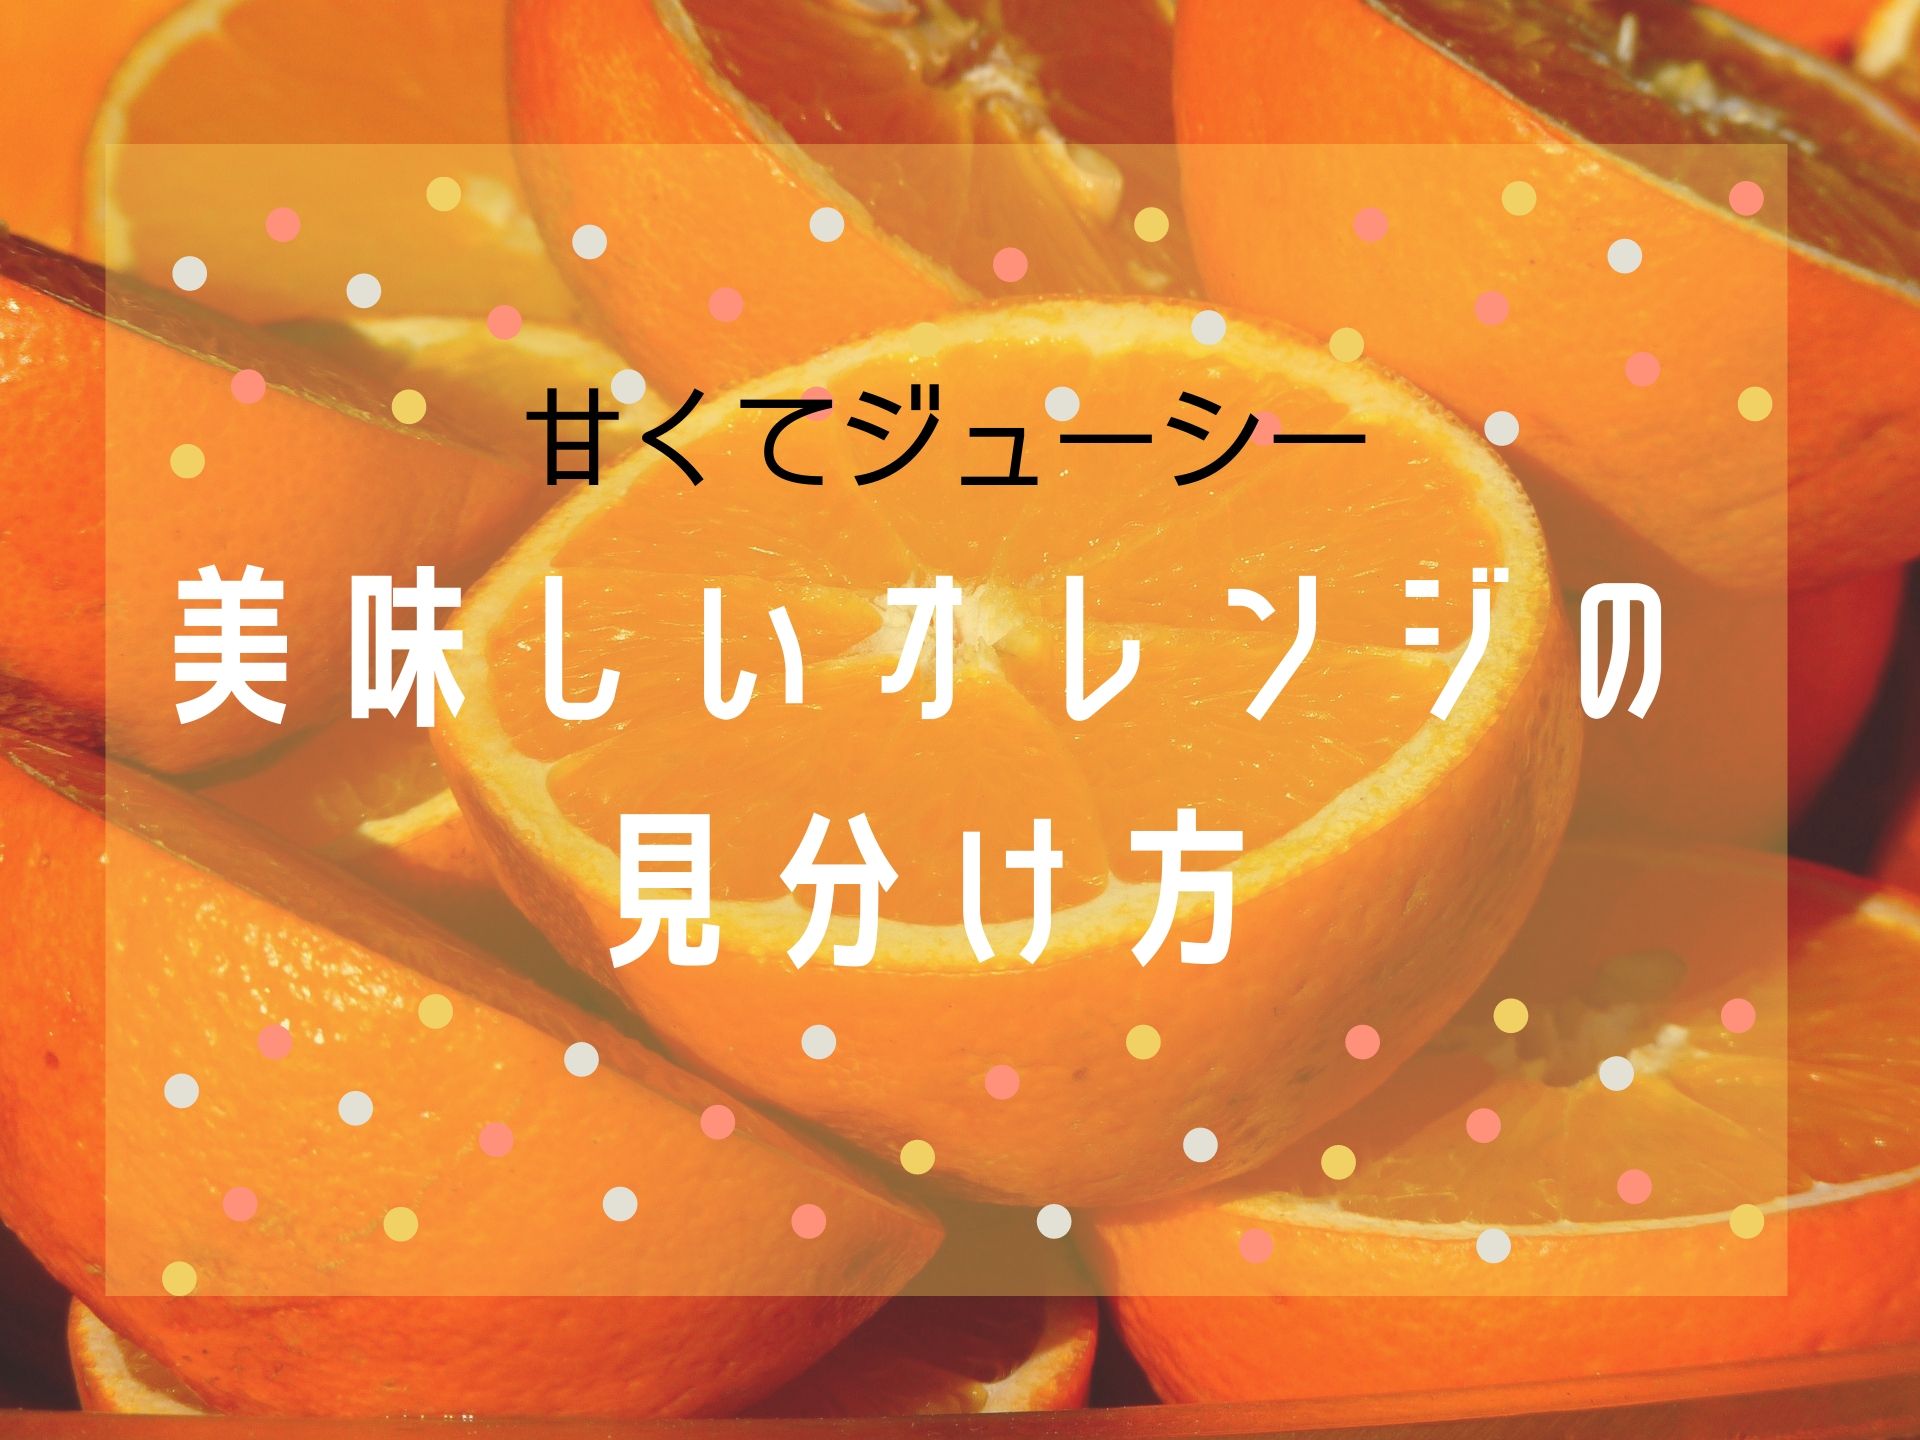 甘くて美味しいオレンジの見分け方 しくじりママ後継者のブログ